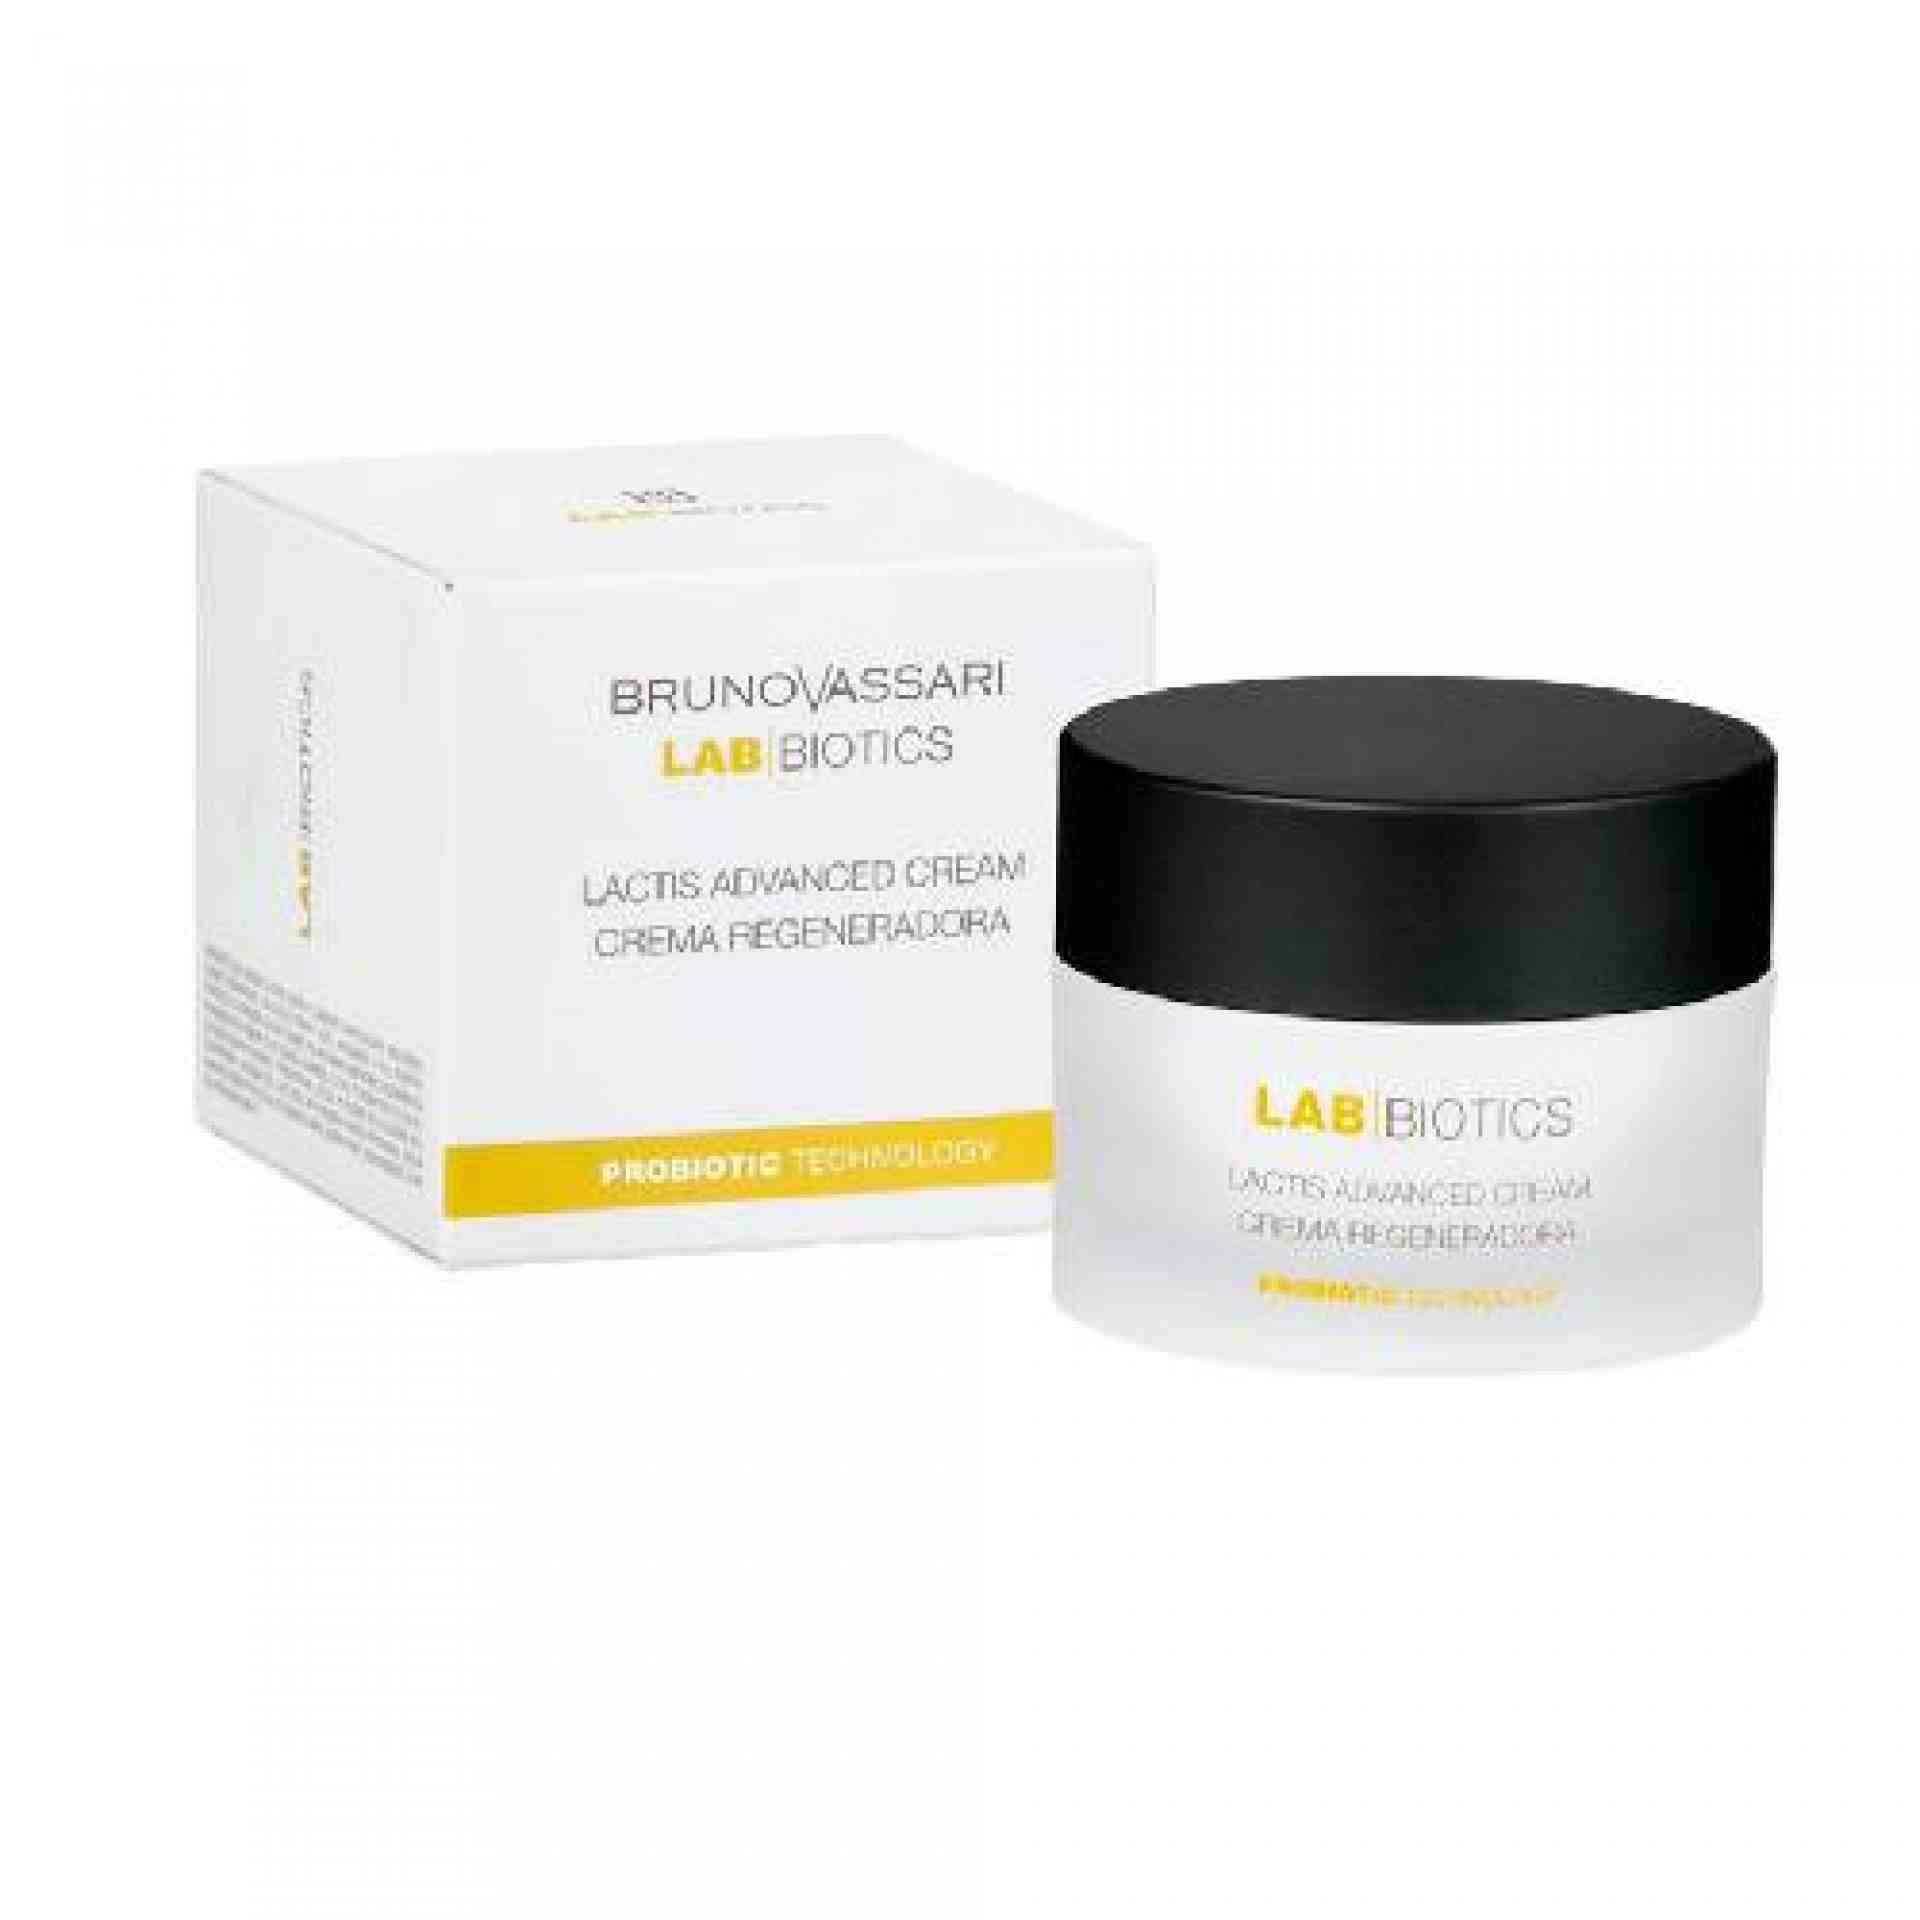 Lactis Advanced Cream | Crema regeneradora 50ml - Lab Biotics - Bruno Vassari ®